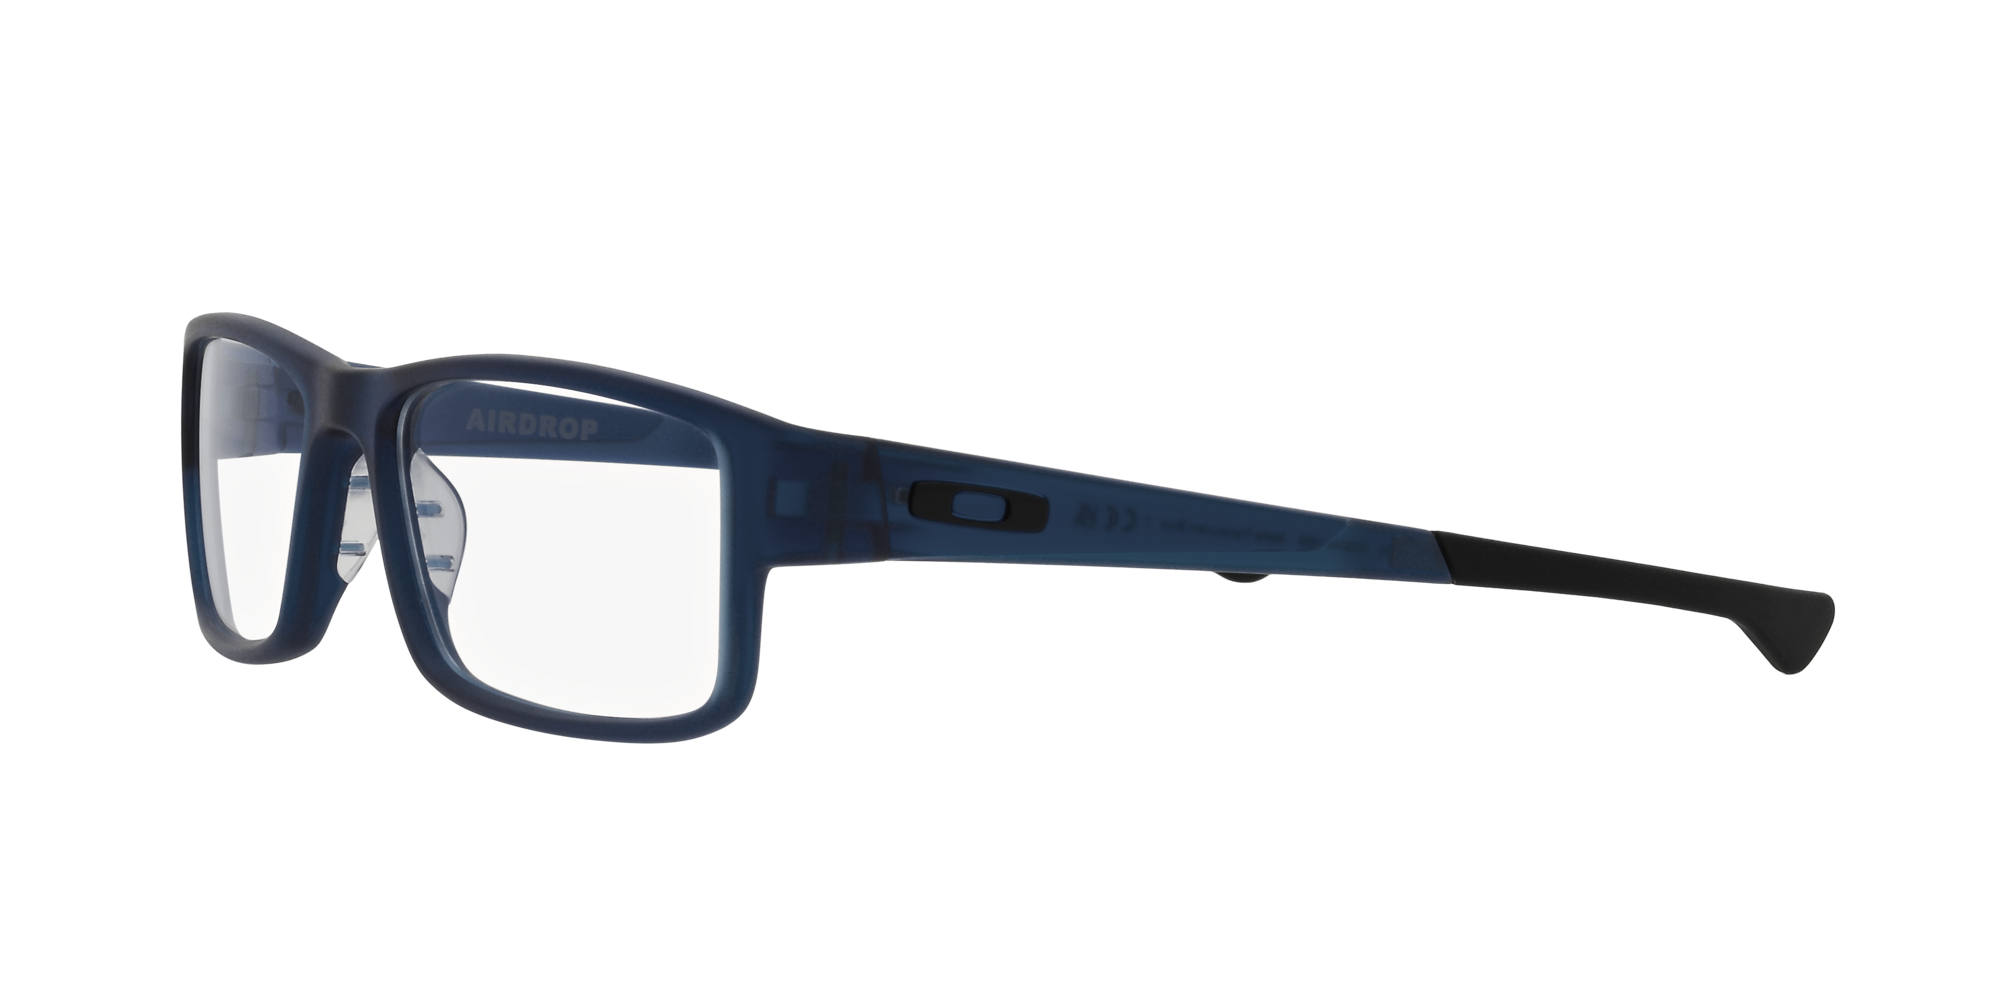 Das Bild zeigt die Korrektionsbrille OX804618  von der Marke Oakley  in  matt blau transluzent.